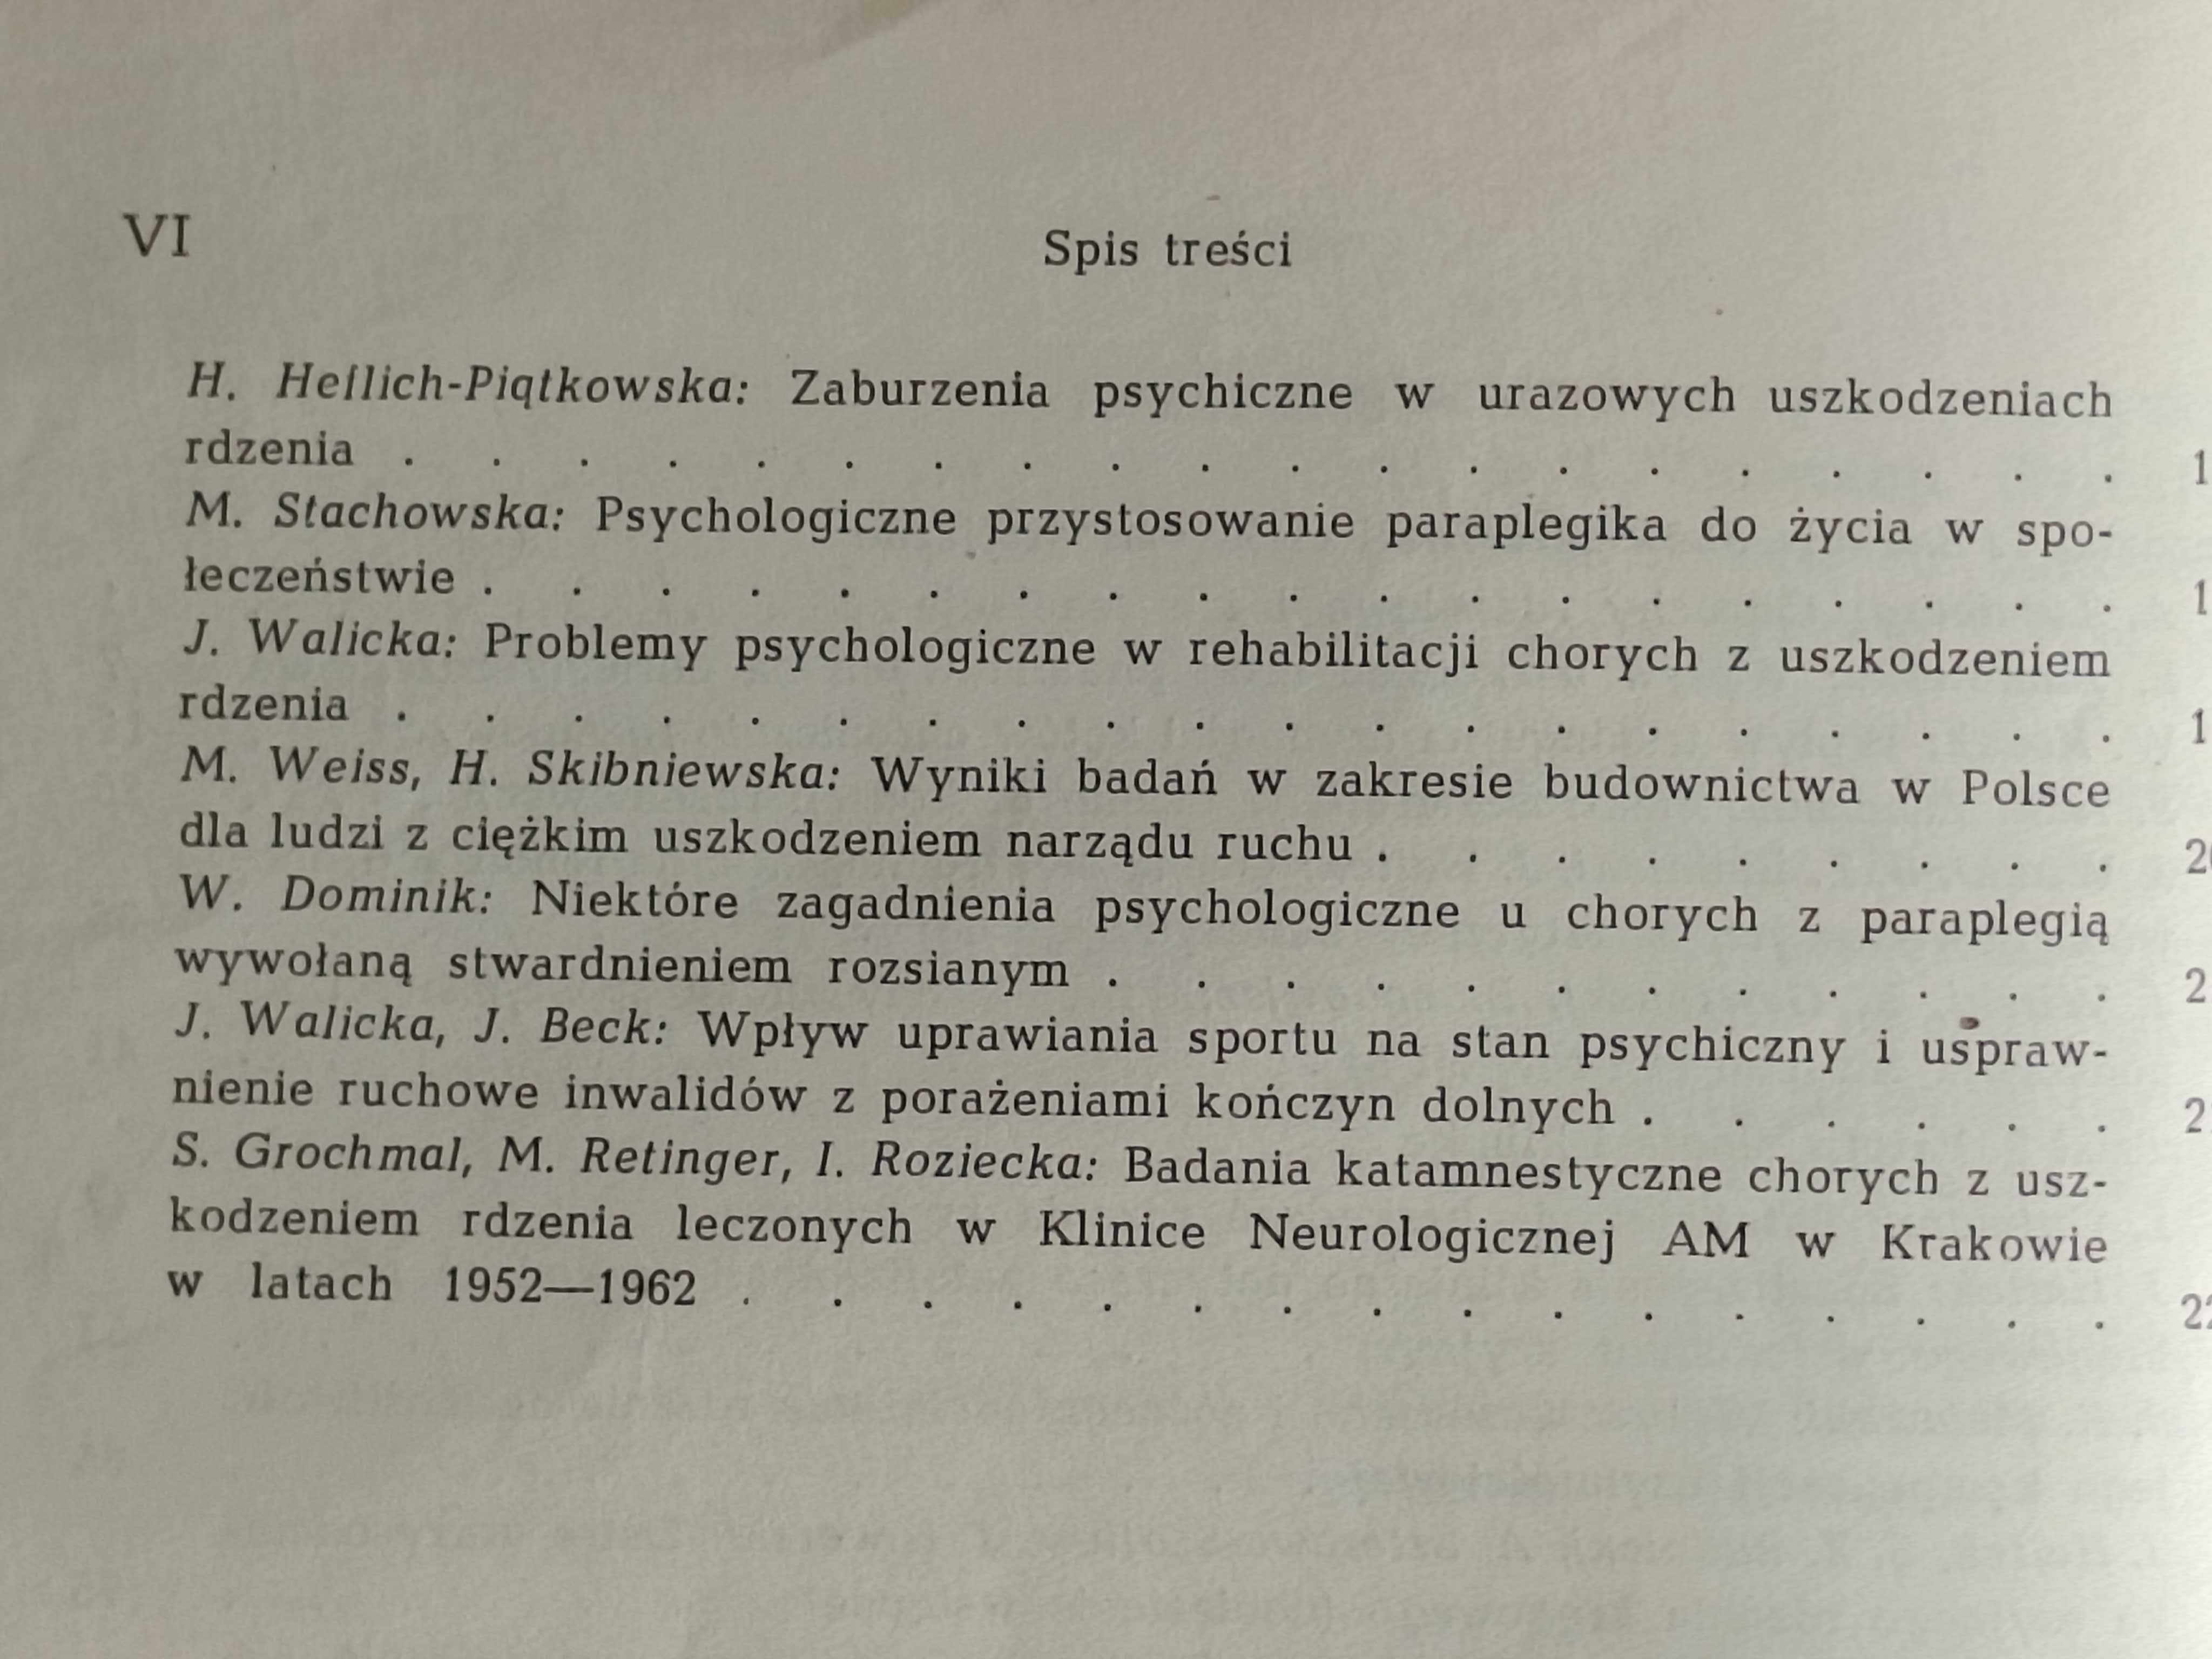 Kompensacja czynności rdzenia kręgowego. Materiały sesji naukowej 1968